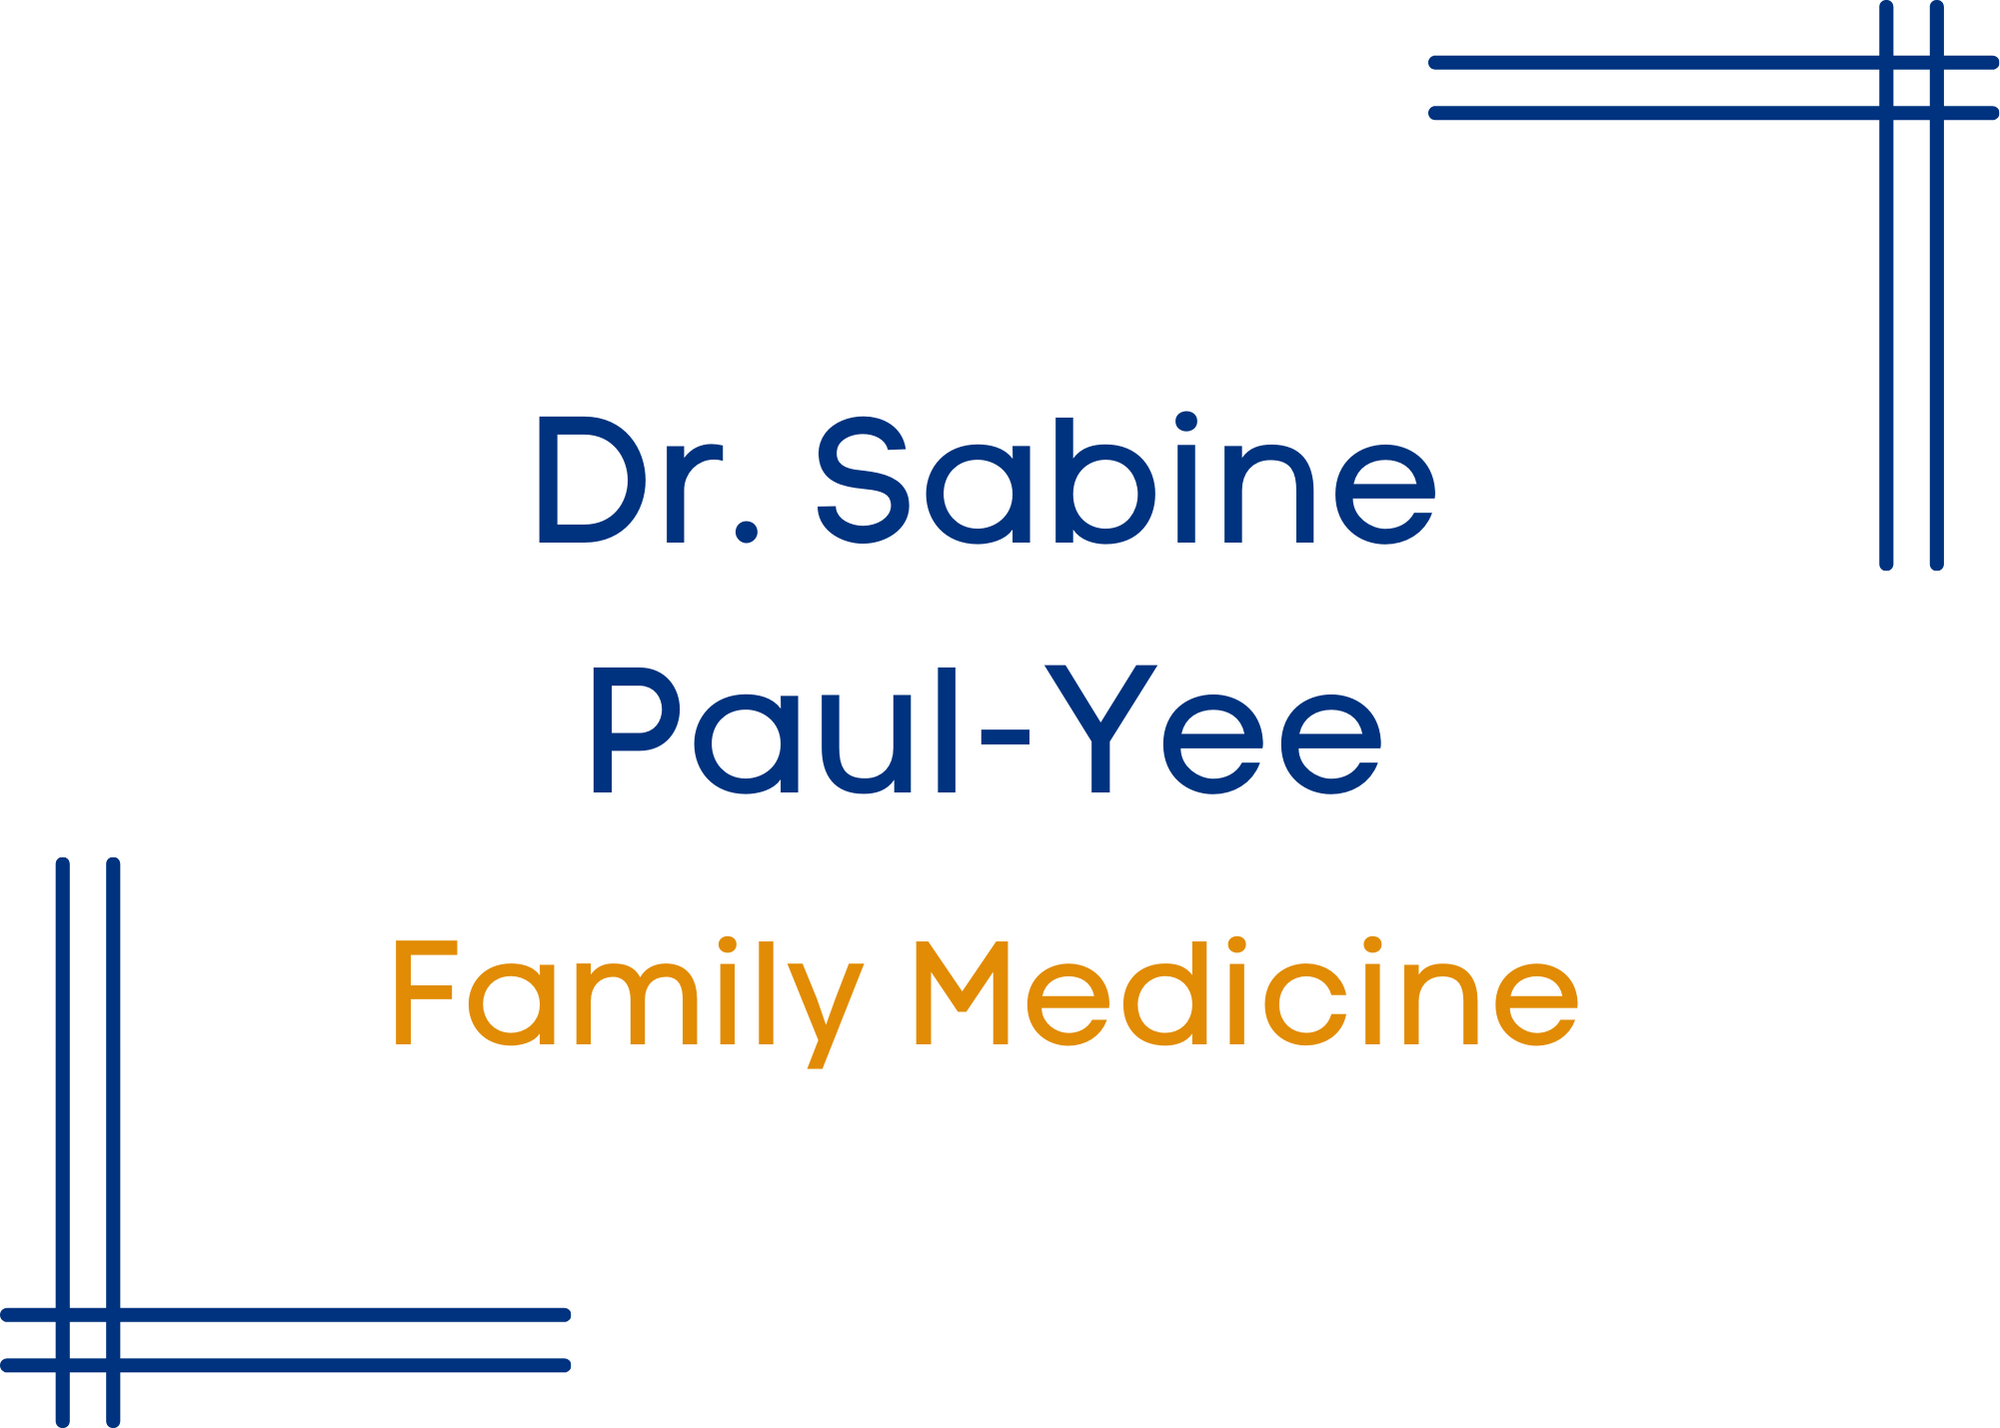 dr sabine paul-yee